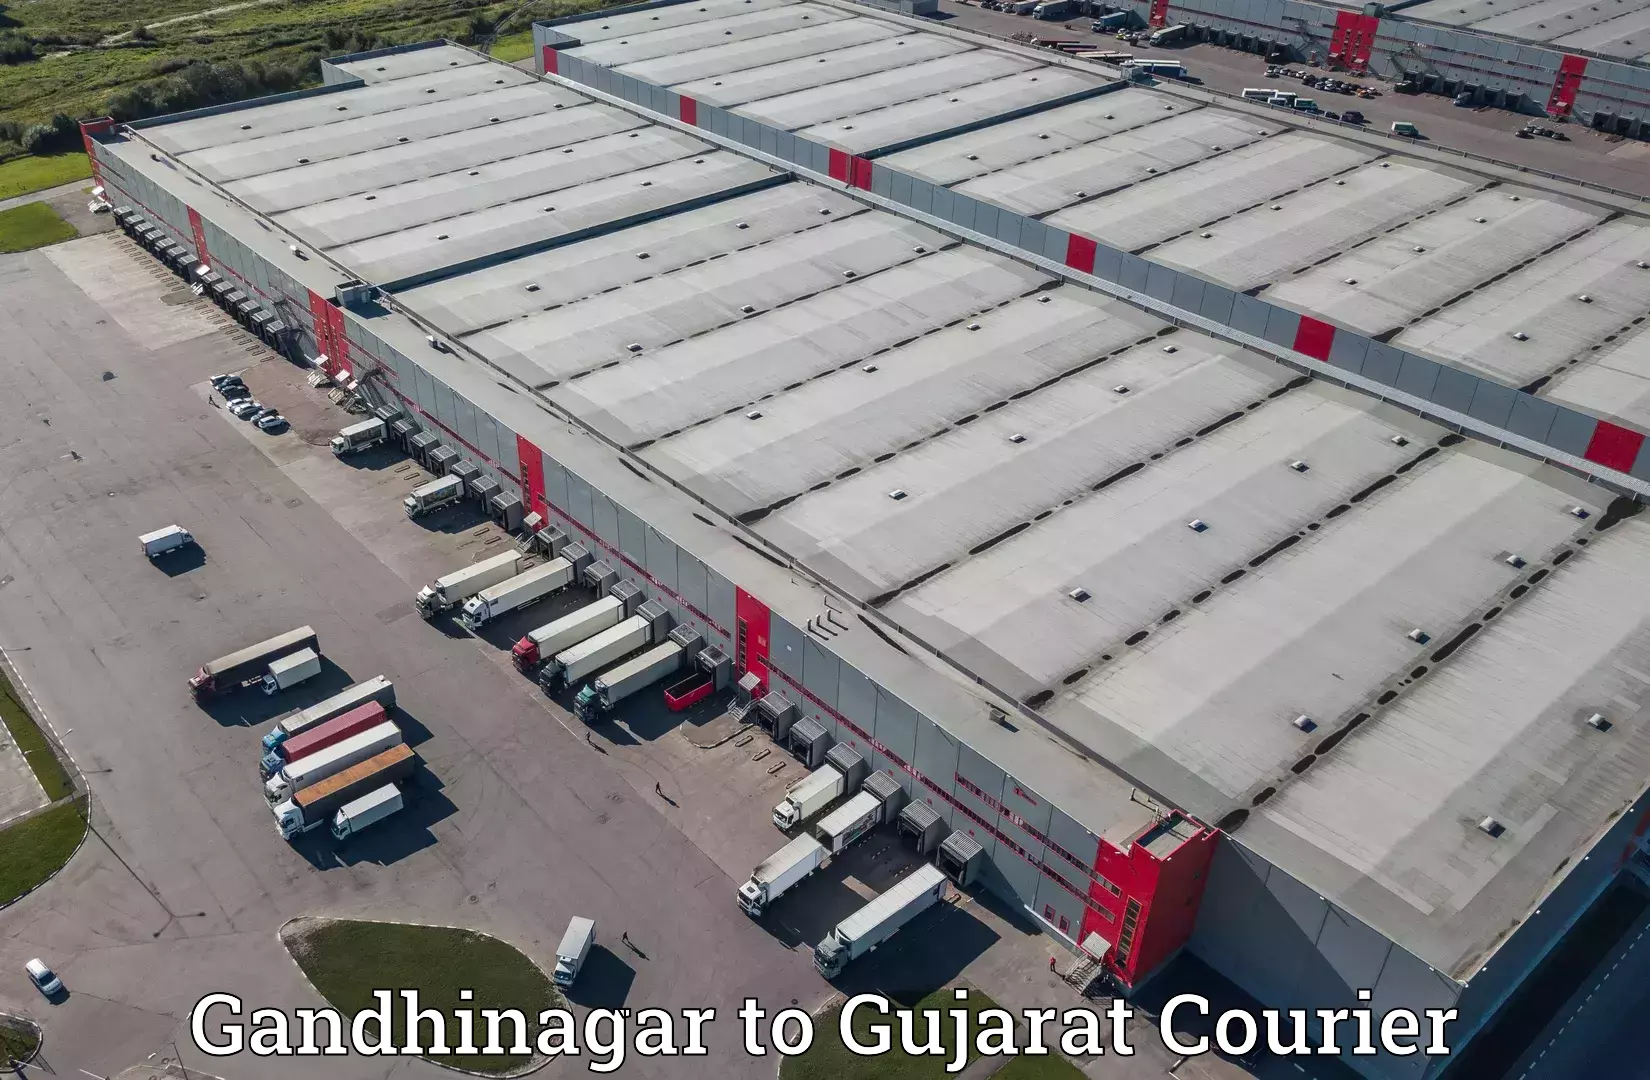 Bulk shipment Gandhinagar to Ahmedabad